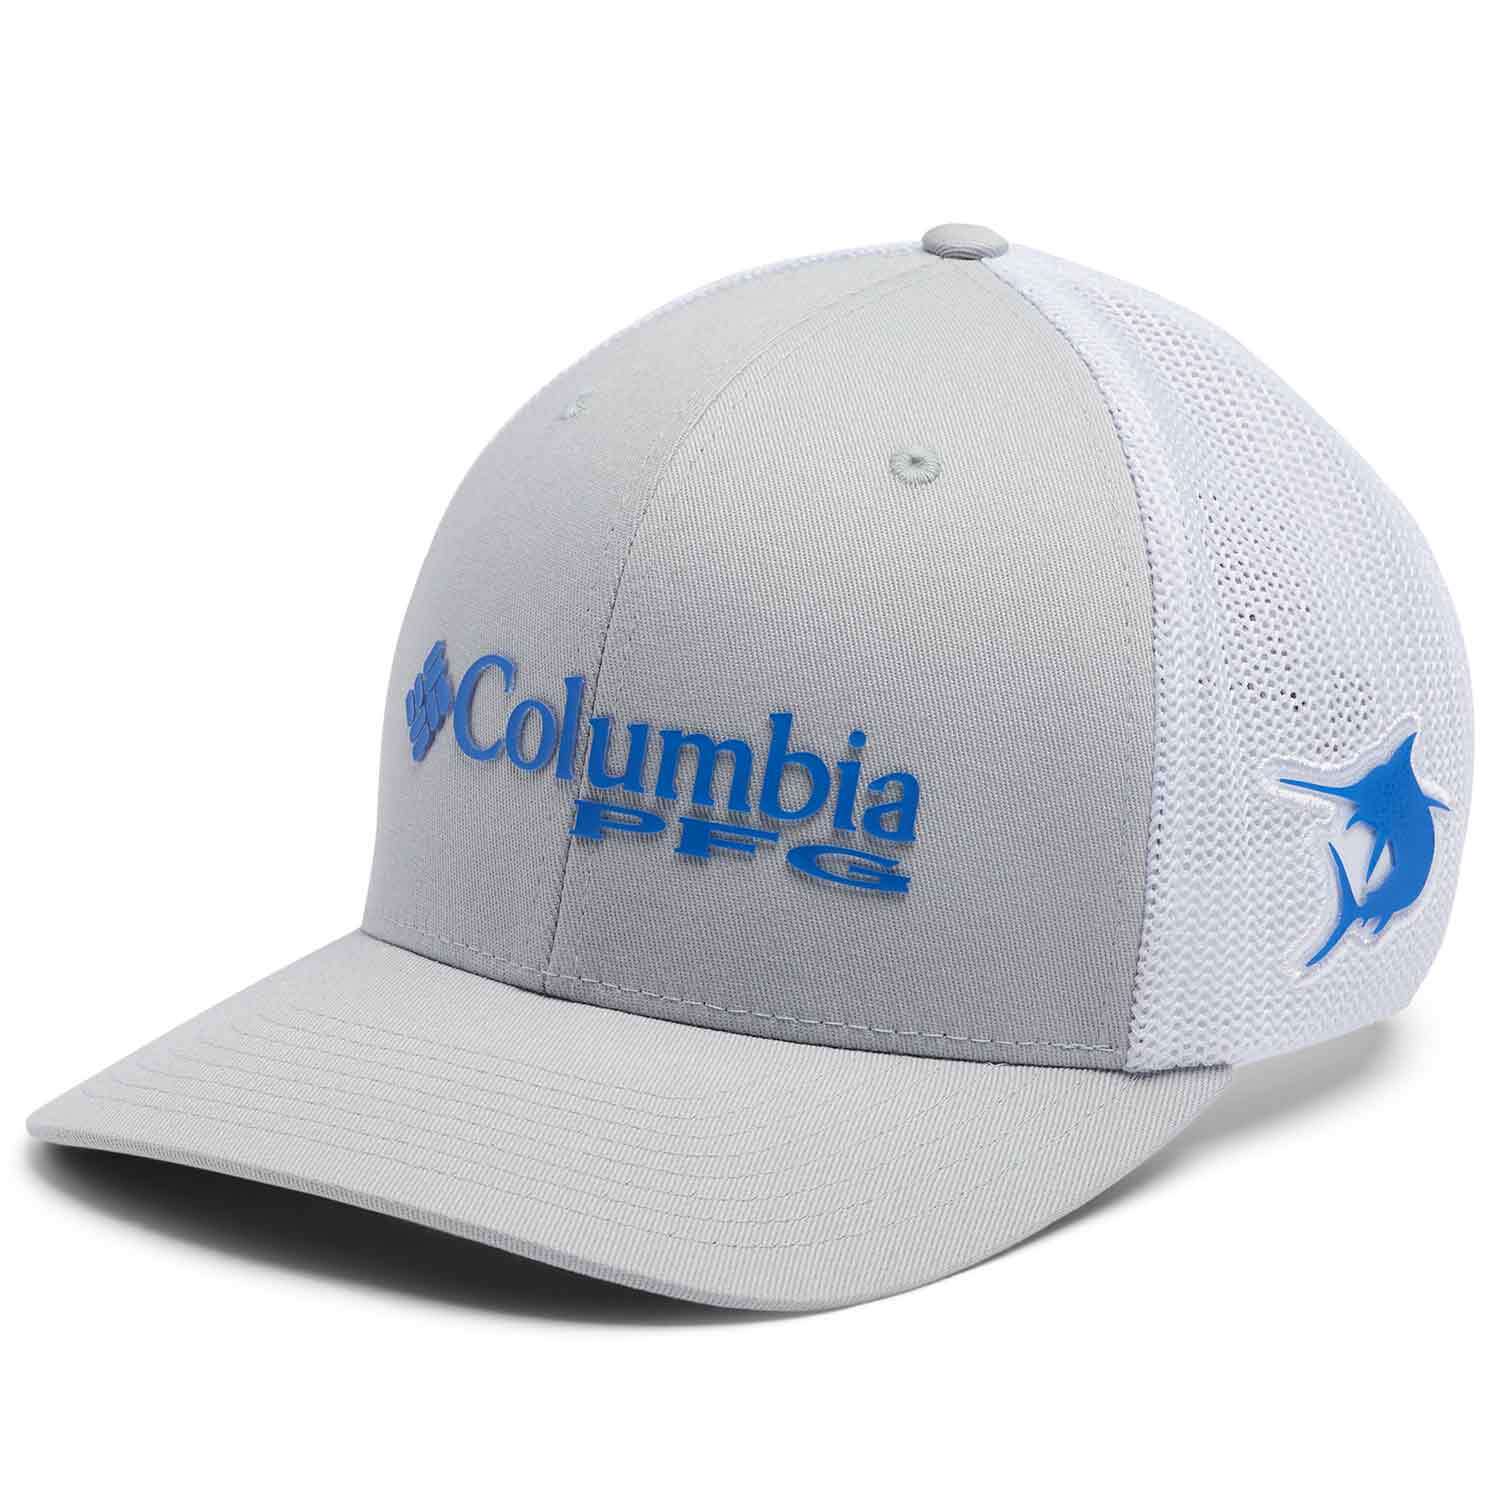 Columbia Mesh Snapback Hat - Men's - Accessories